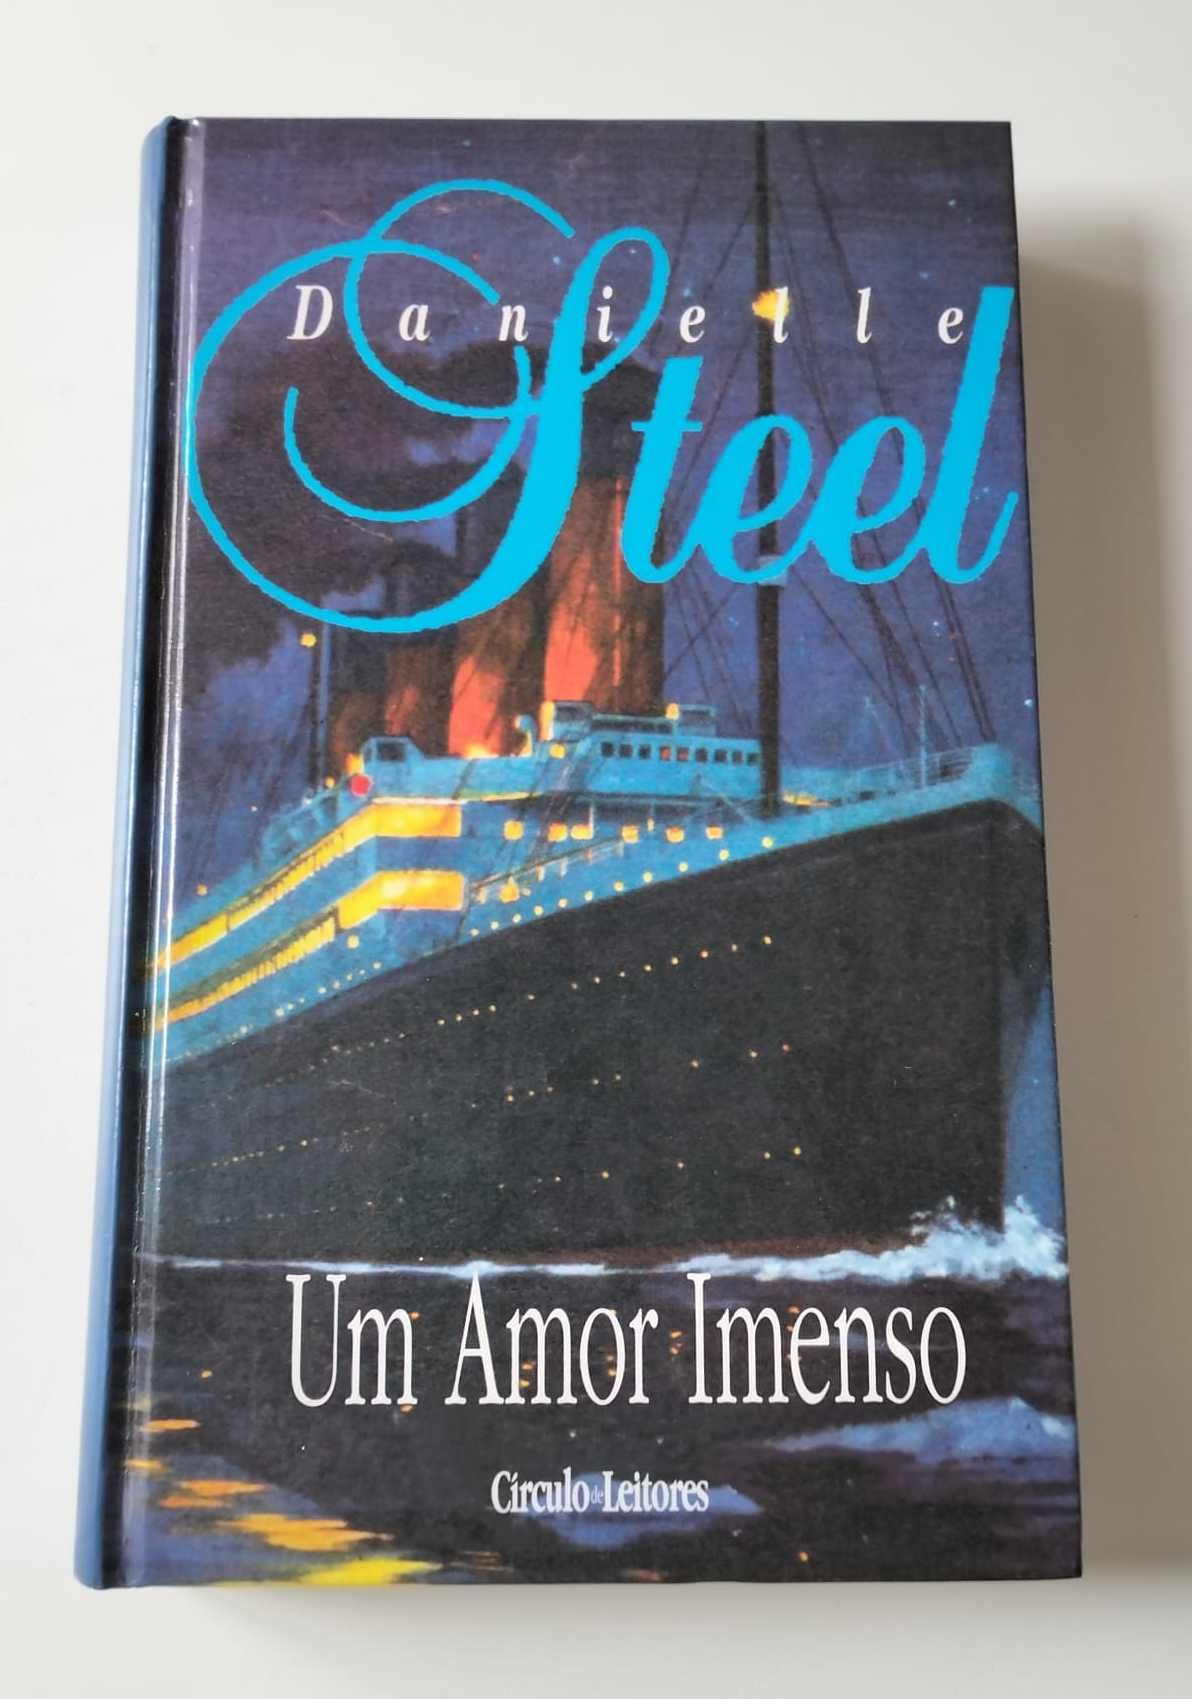 Livro "Um Amor Imenso" - Danielle Steel